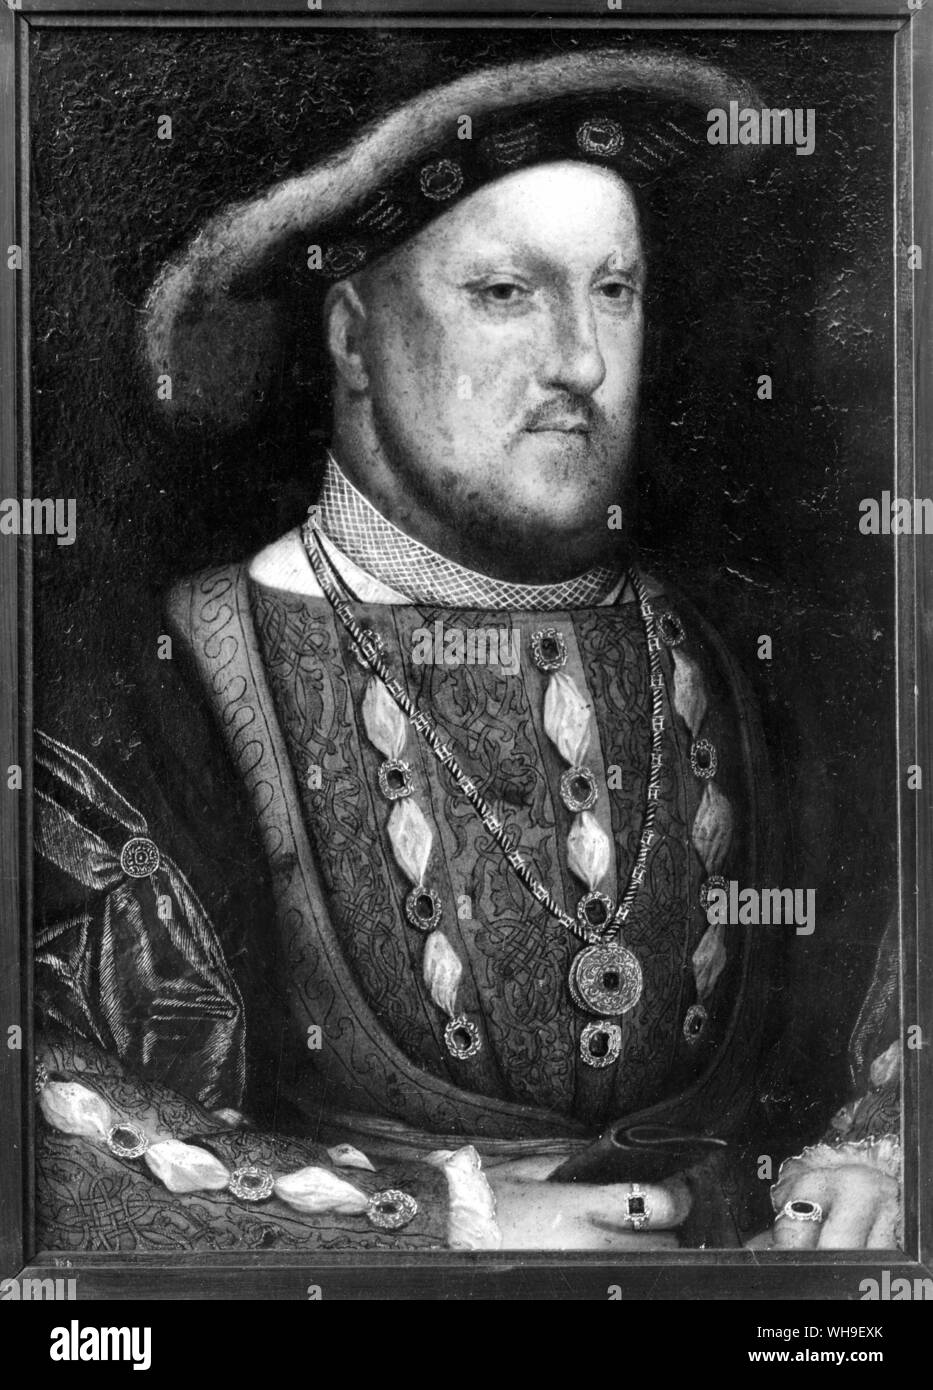 El rey Enrique VIII (1491-1547), rey desde 1509. Pintura de Holbein. Foto de stock